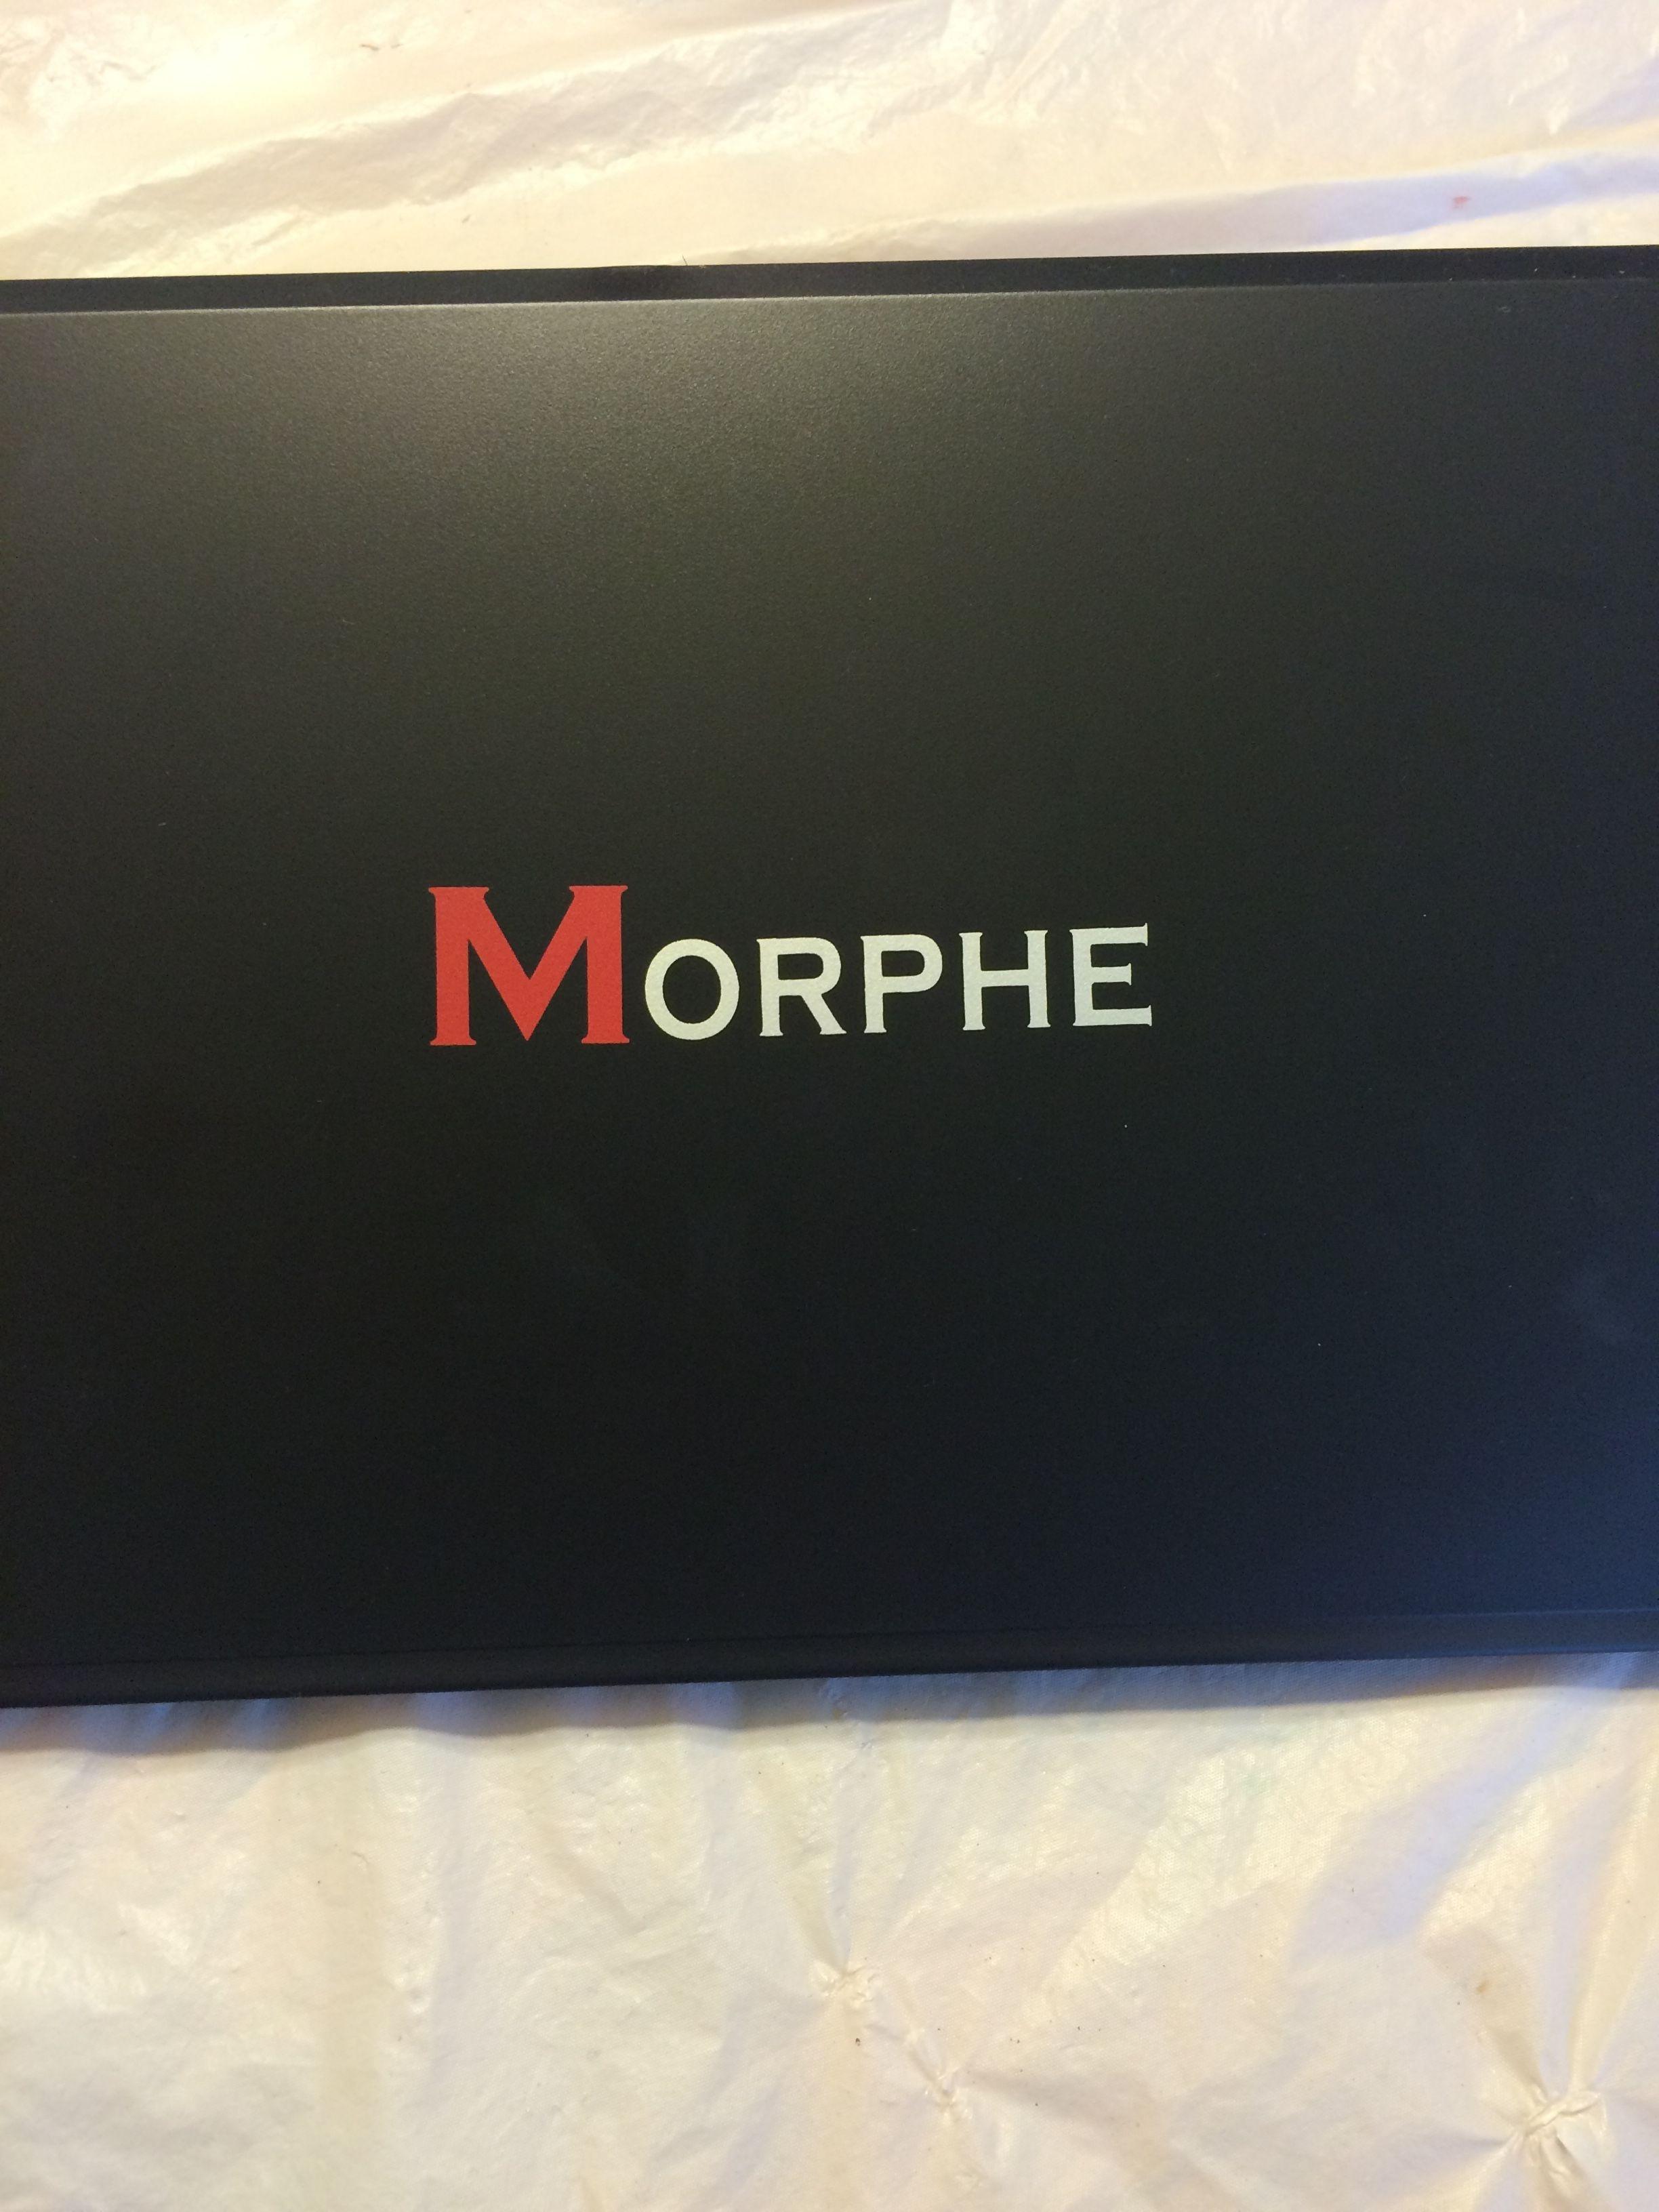 Morphe Logo - morphe brushes